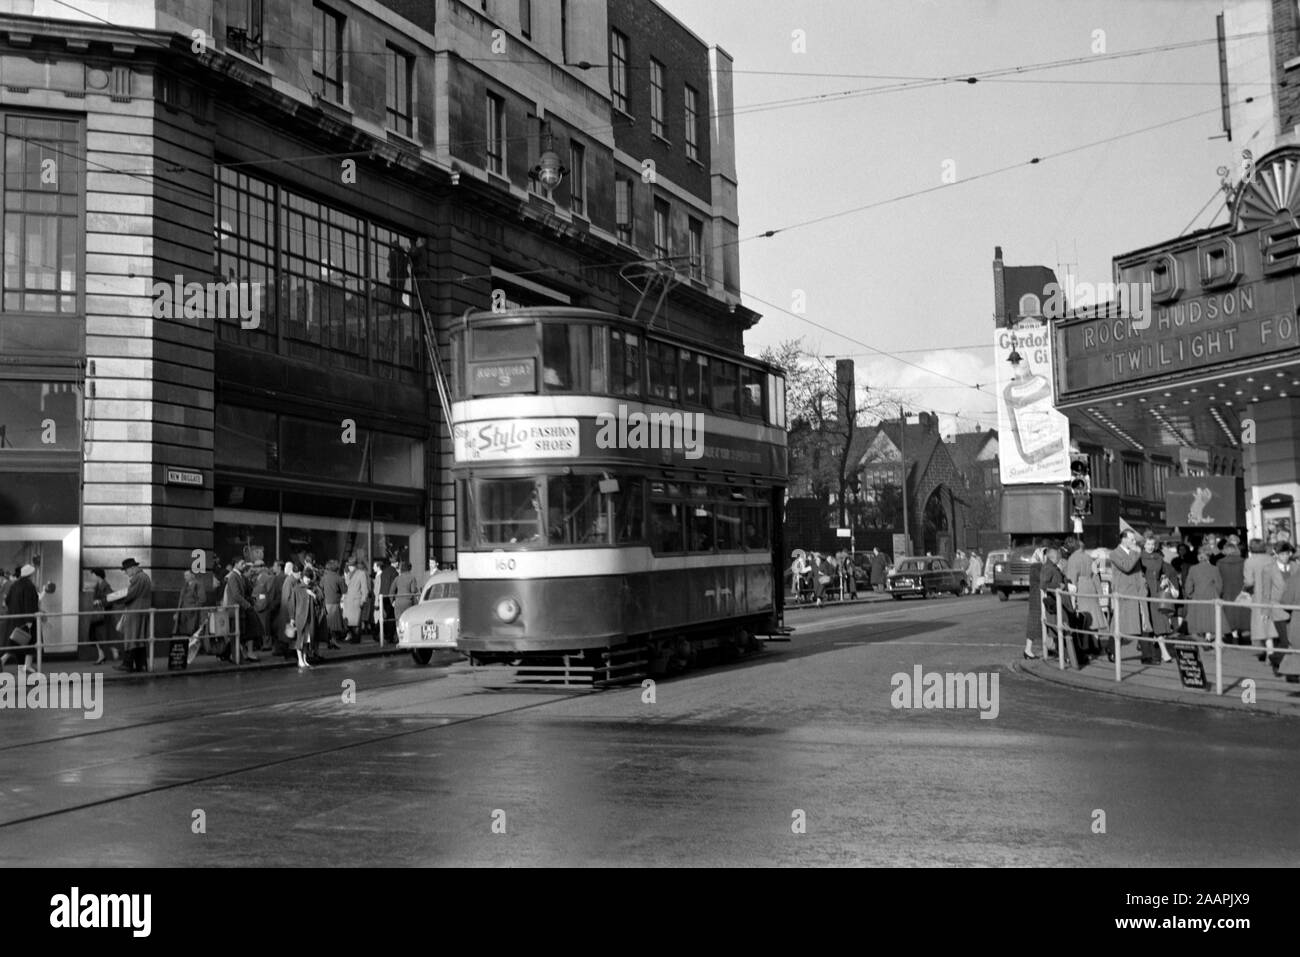 Le Tram 160 Standard de Leeds à l'extérieur du cinéma Odeon à New Briggate en 1958, le cinéma est montrant les dieux pour Twilight - staring Rock Hudson. Leeds City a quelque peu changé au fil des ans. Le bâtiment du cinéma est toujours là mais est maintenant un Primark store. Banque D'Images